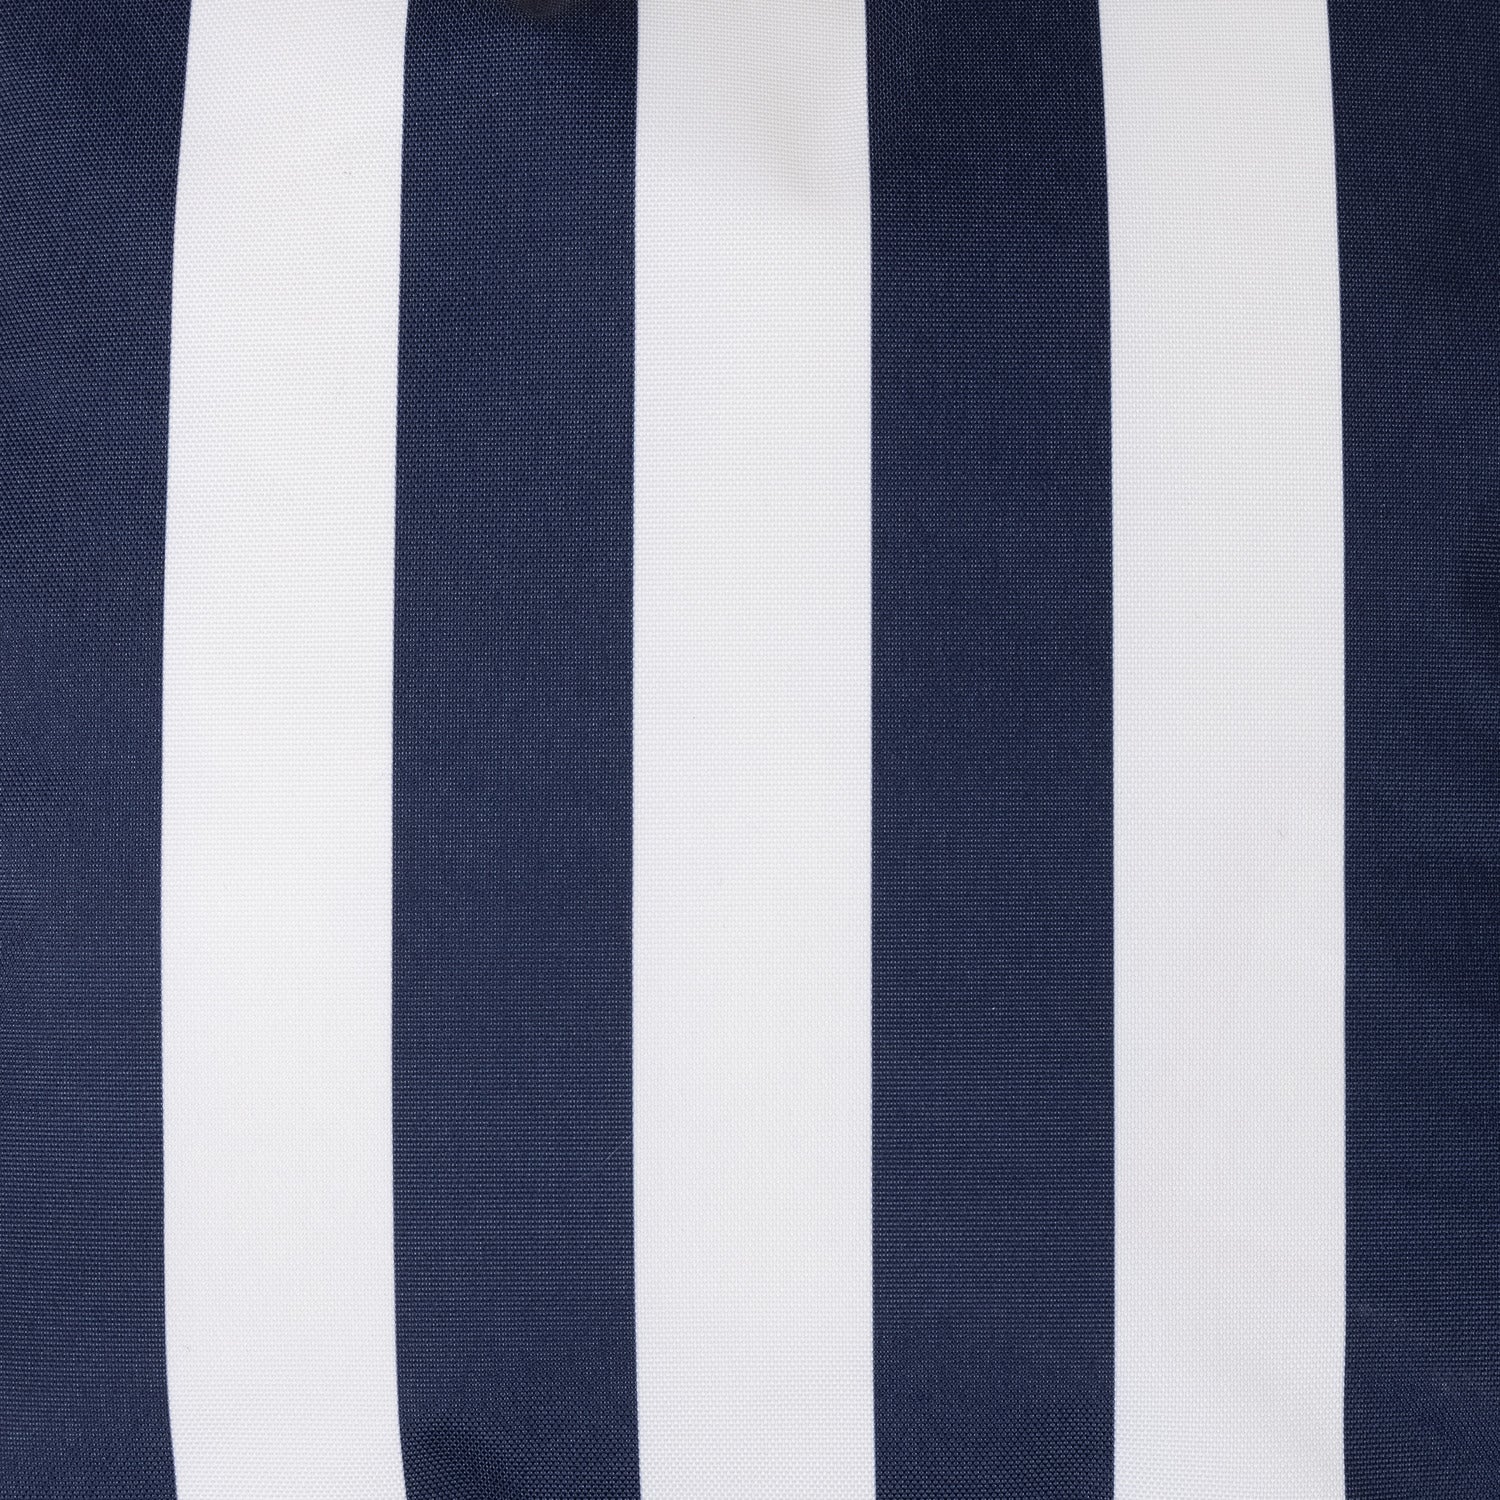 Sunbrella Cushion White/Blue Strips 5110